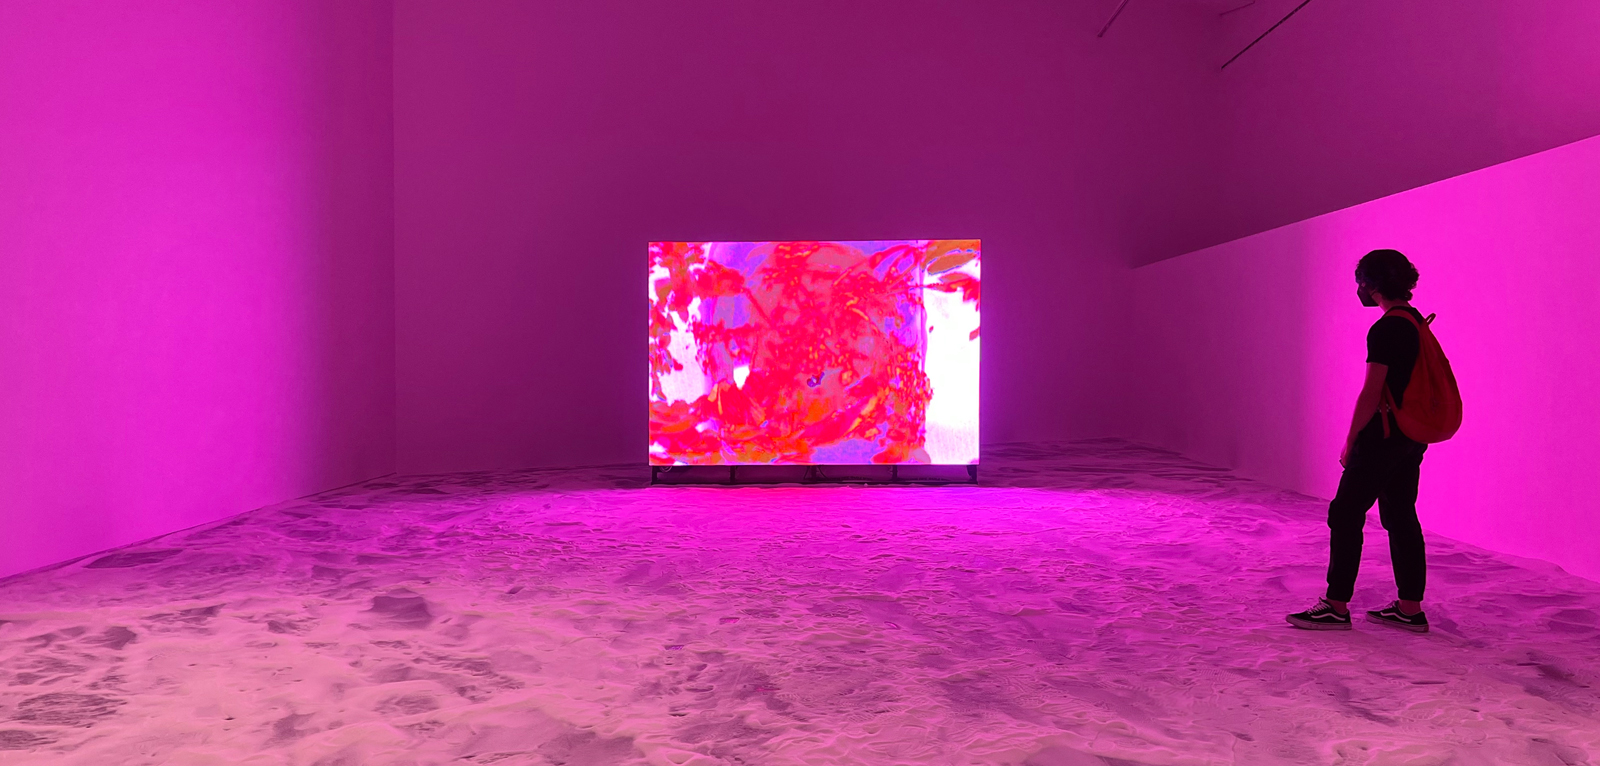 'Terminal Beach' por Troika en Arte Abierto como parte de la exposición 'No Sound of Water' - pantalla LCD cortesía Grupo Expansión